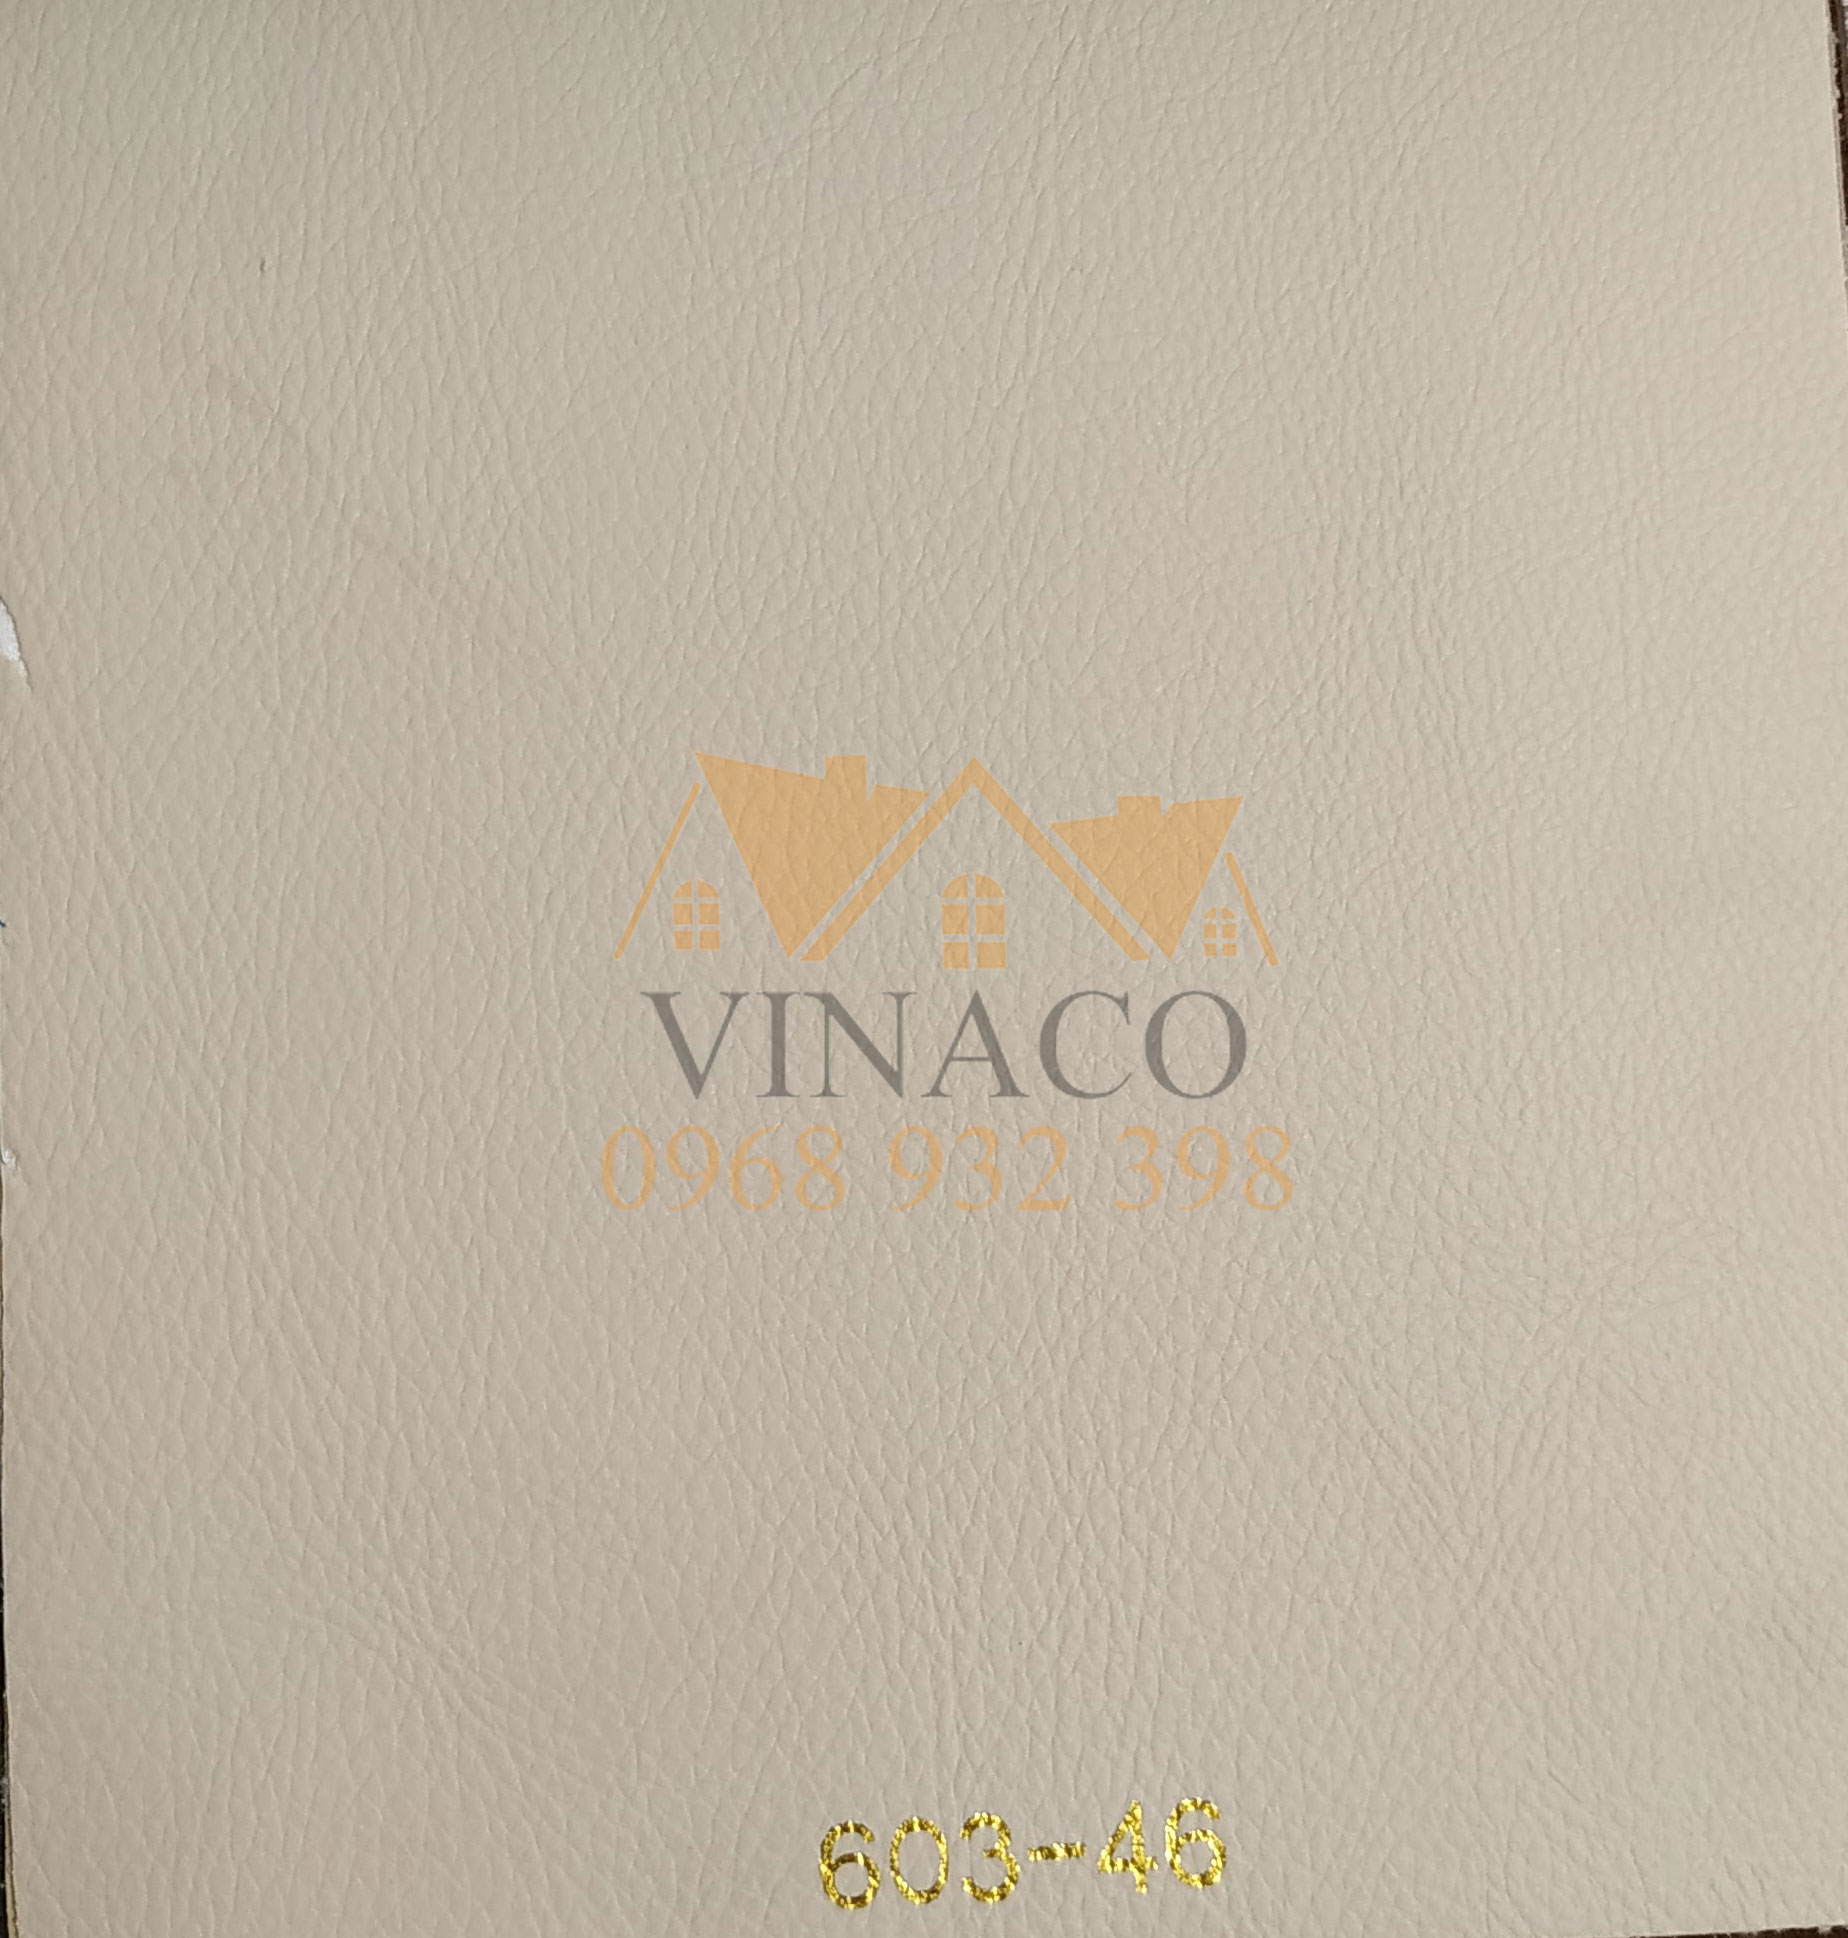 Vinaco cung cấp da bọc sofa sỉ lẻ toàn quốc với giá rẻ nhất